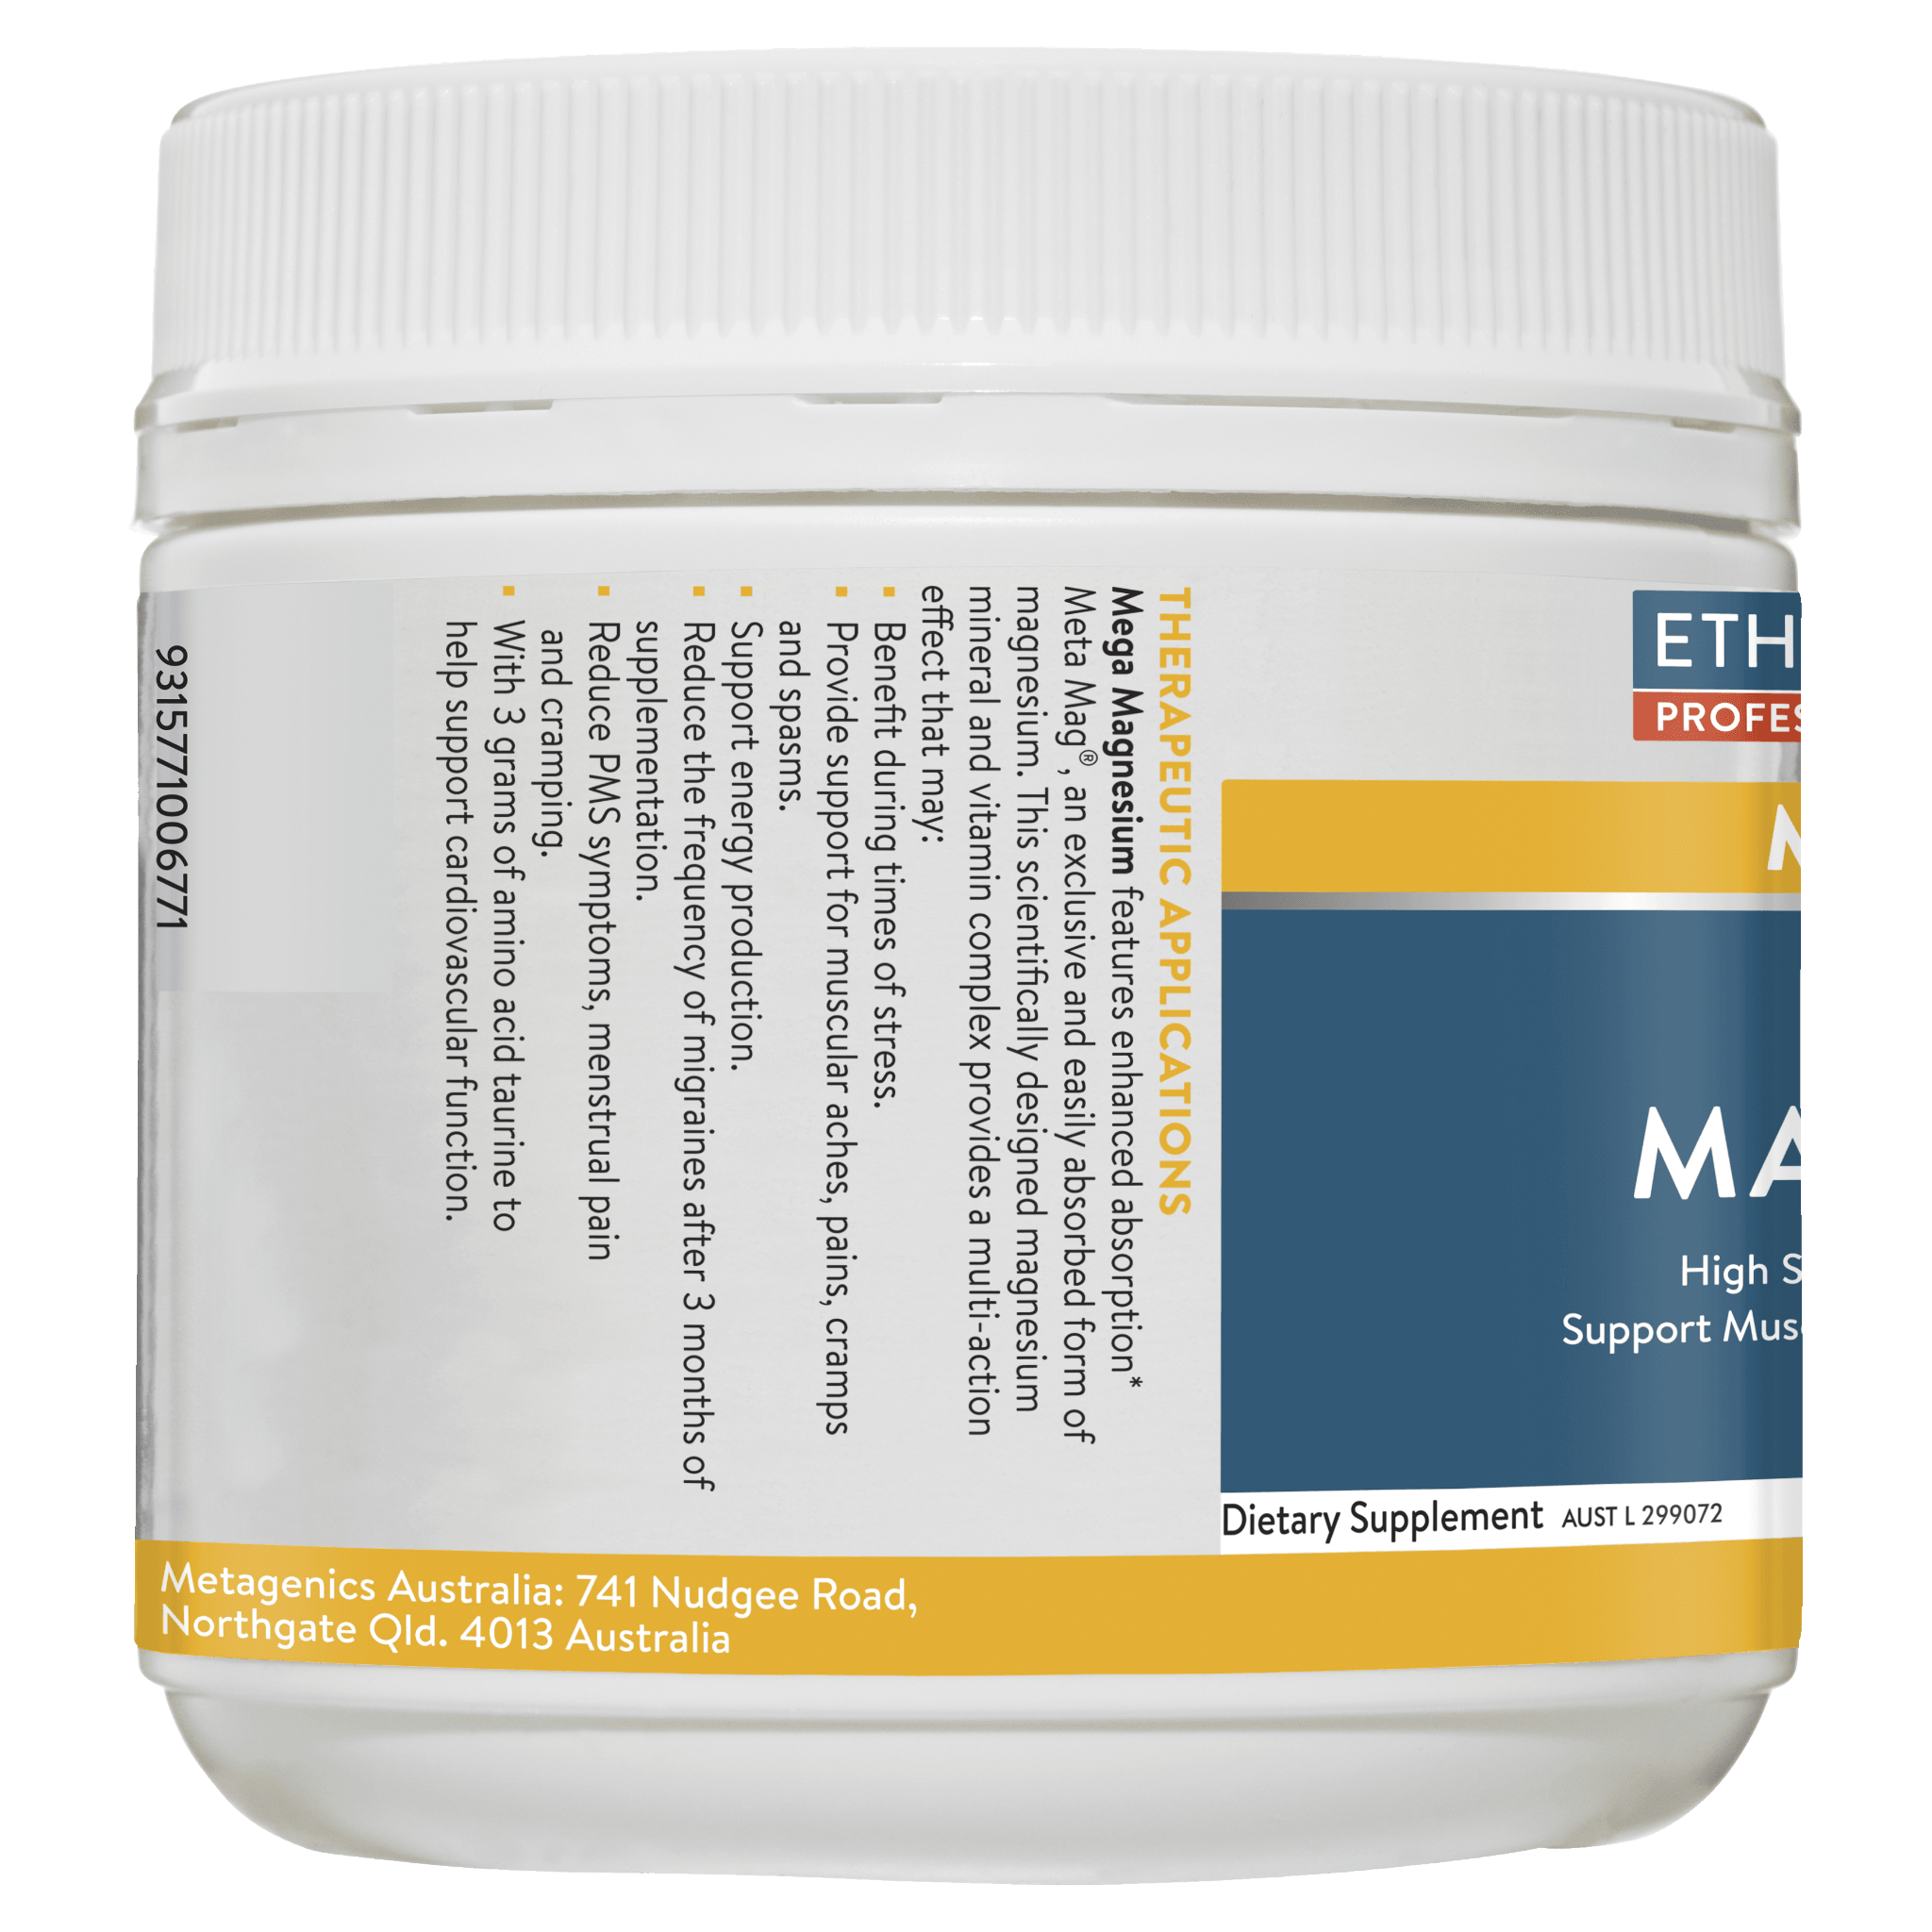 MEGAZORB Mega Magnesium Powder